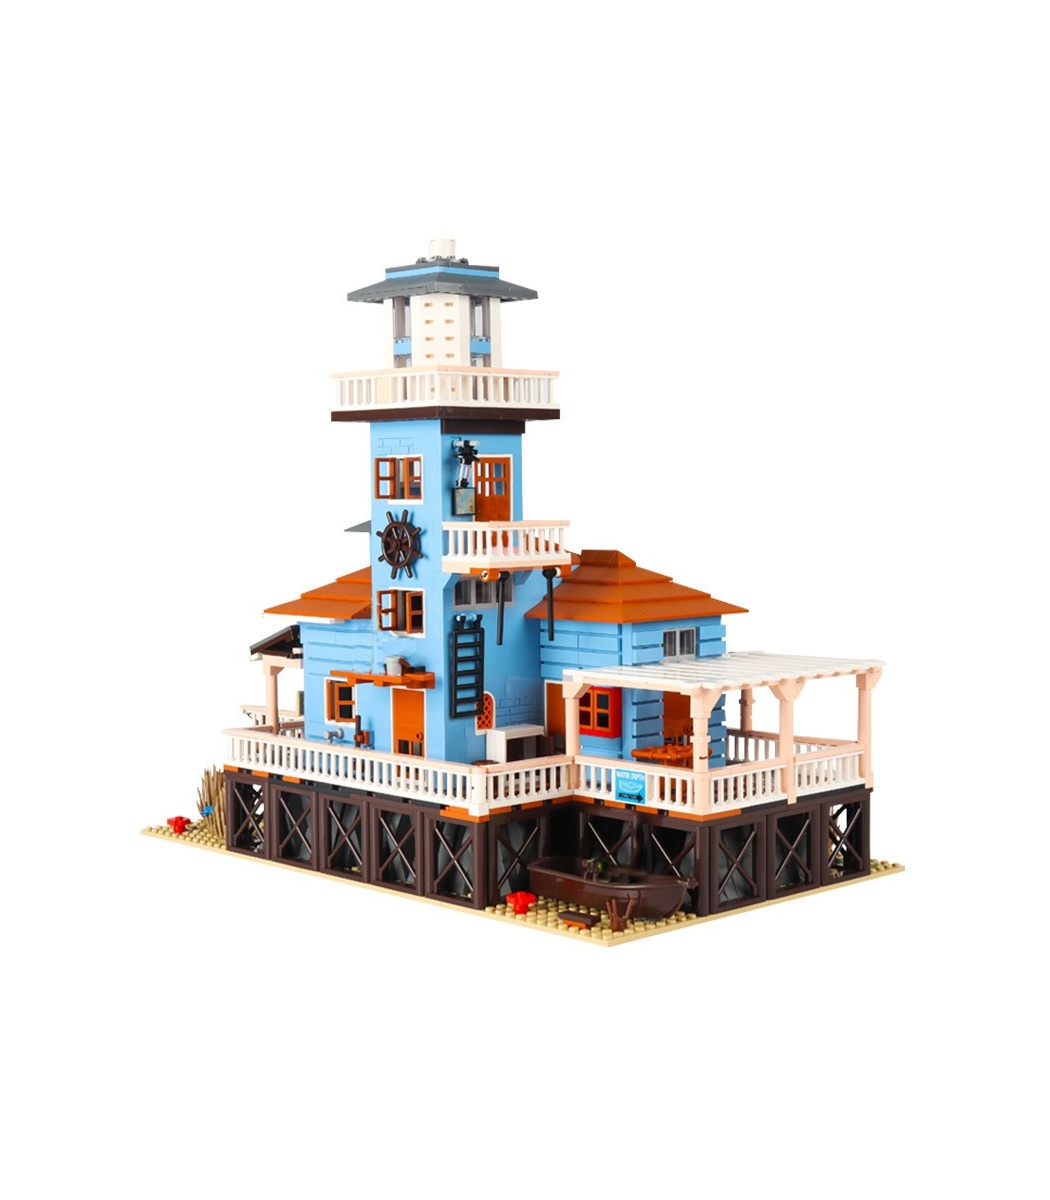 PANGU PG12002 Lighthouse Fishing House Building Bricks Toy Set 